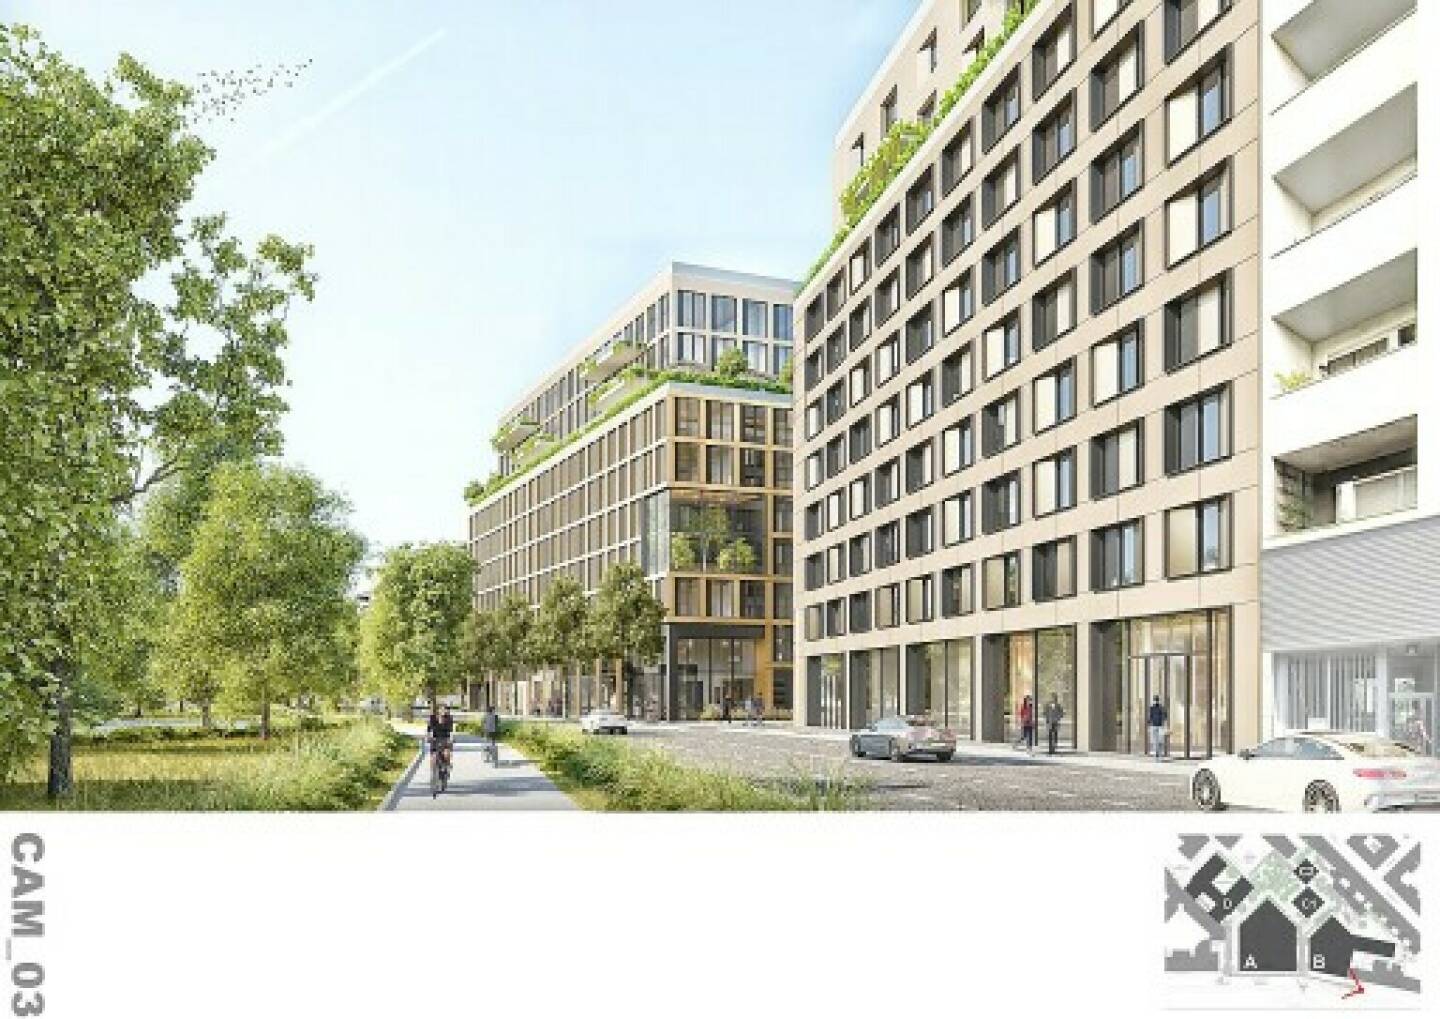 UBM - Visualisierung Gebäudeteil des LeopoldQuartiers in 1020 Wien, Credit: HNP Architects